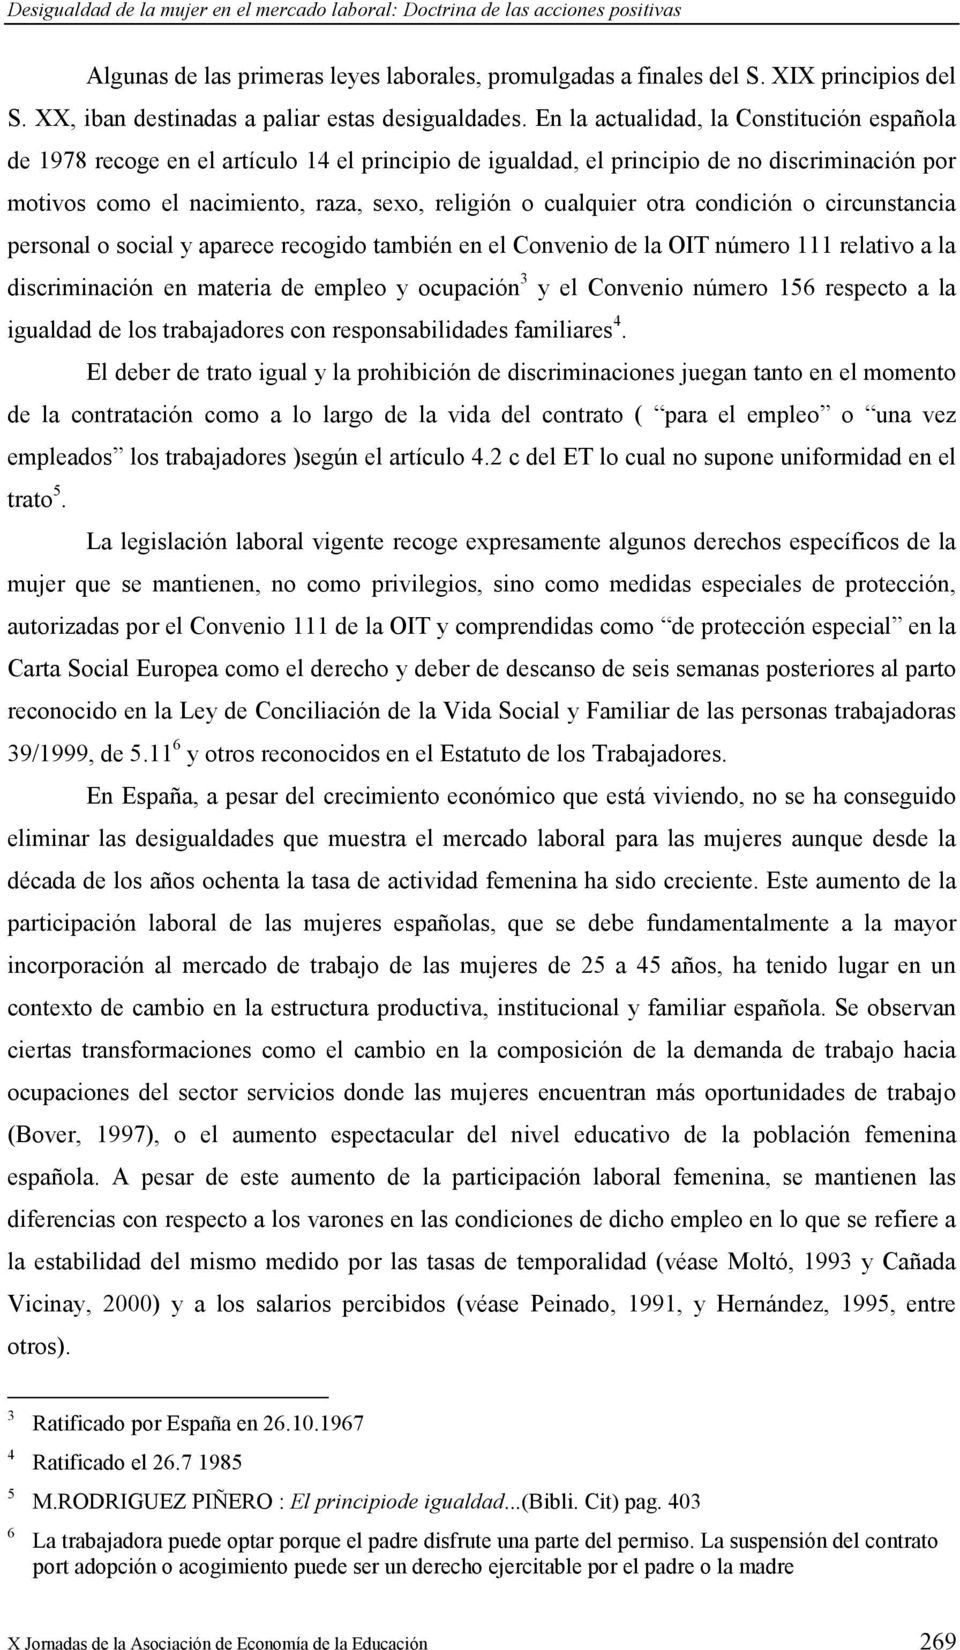 En la actualidad, la Constitución española de 1978 recoge en el artículo 14 el principio de igualdad, el principio de no discriminación por motivos como el nacimiento, raza, sexo, religión o